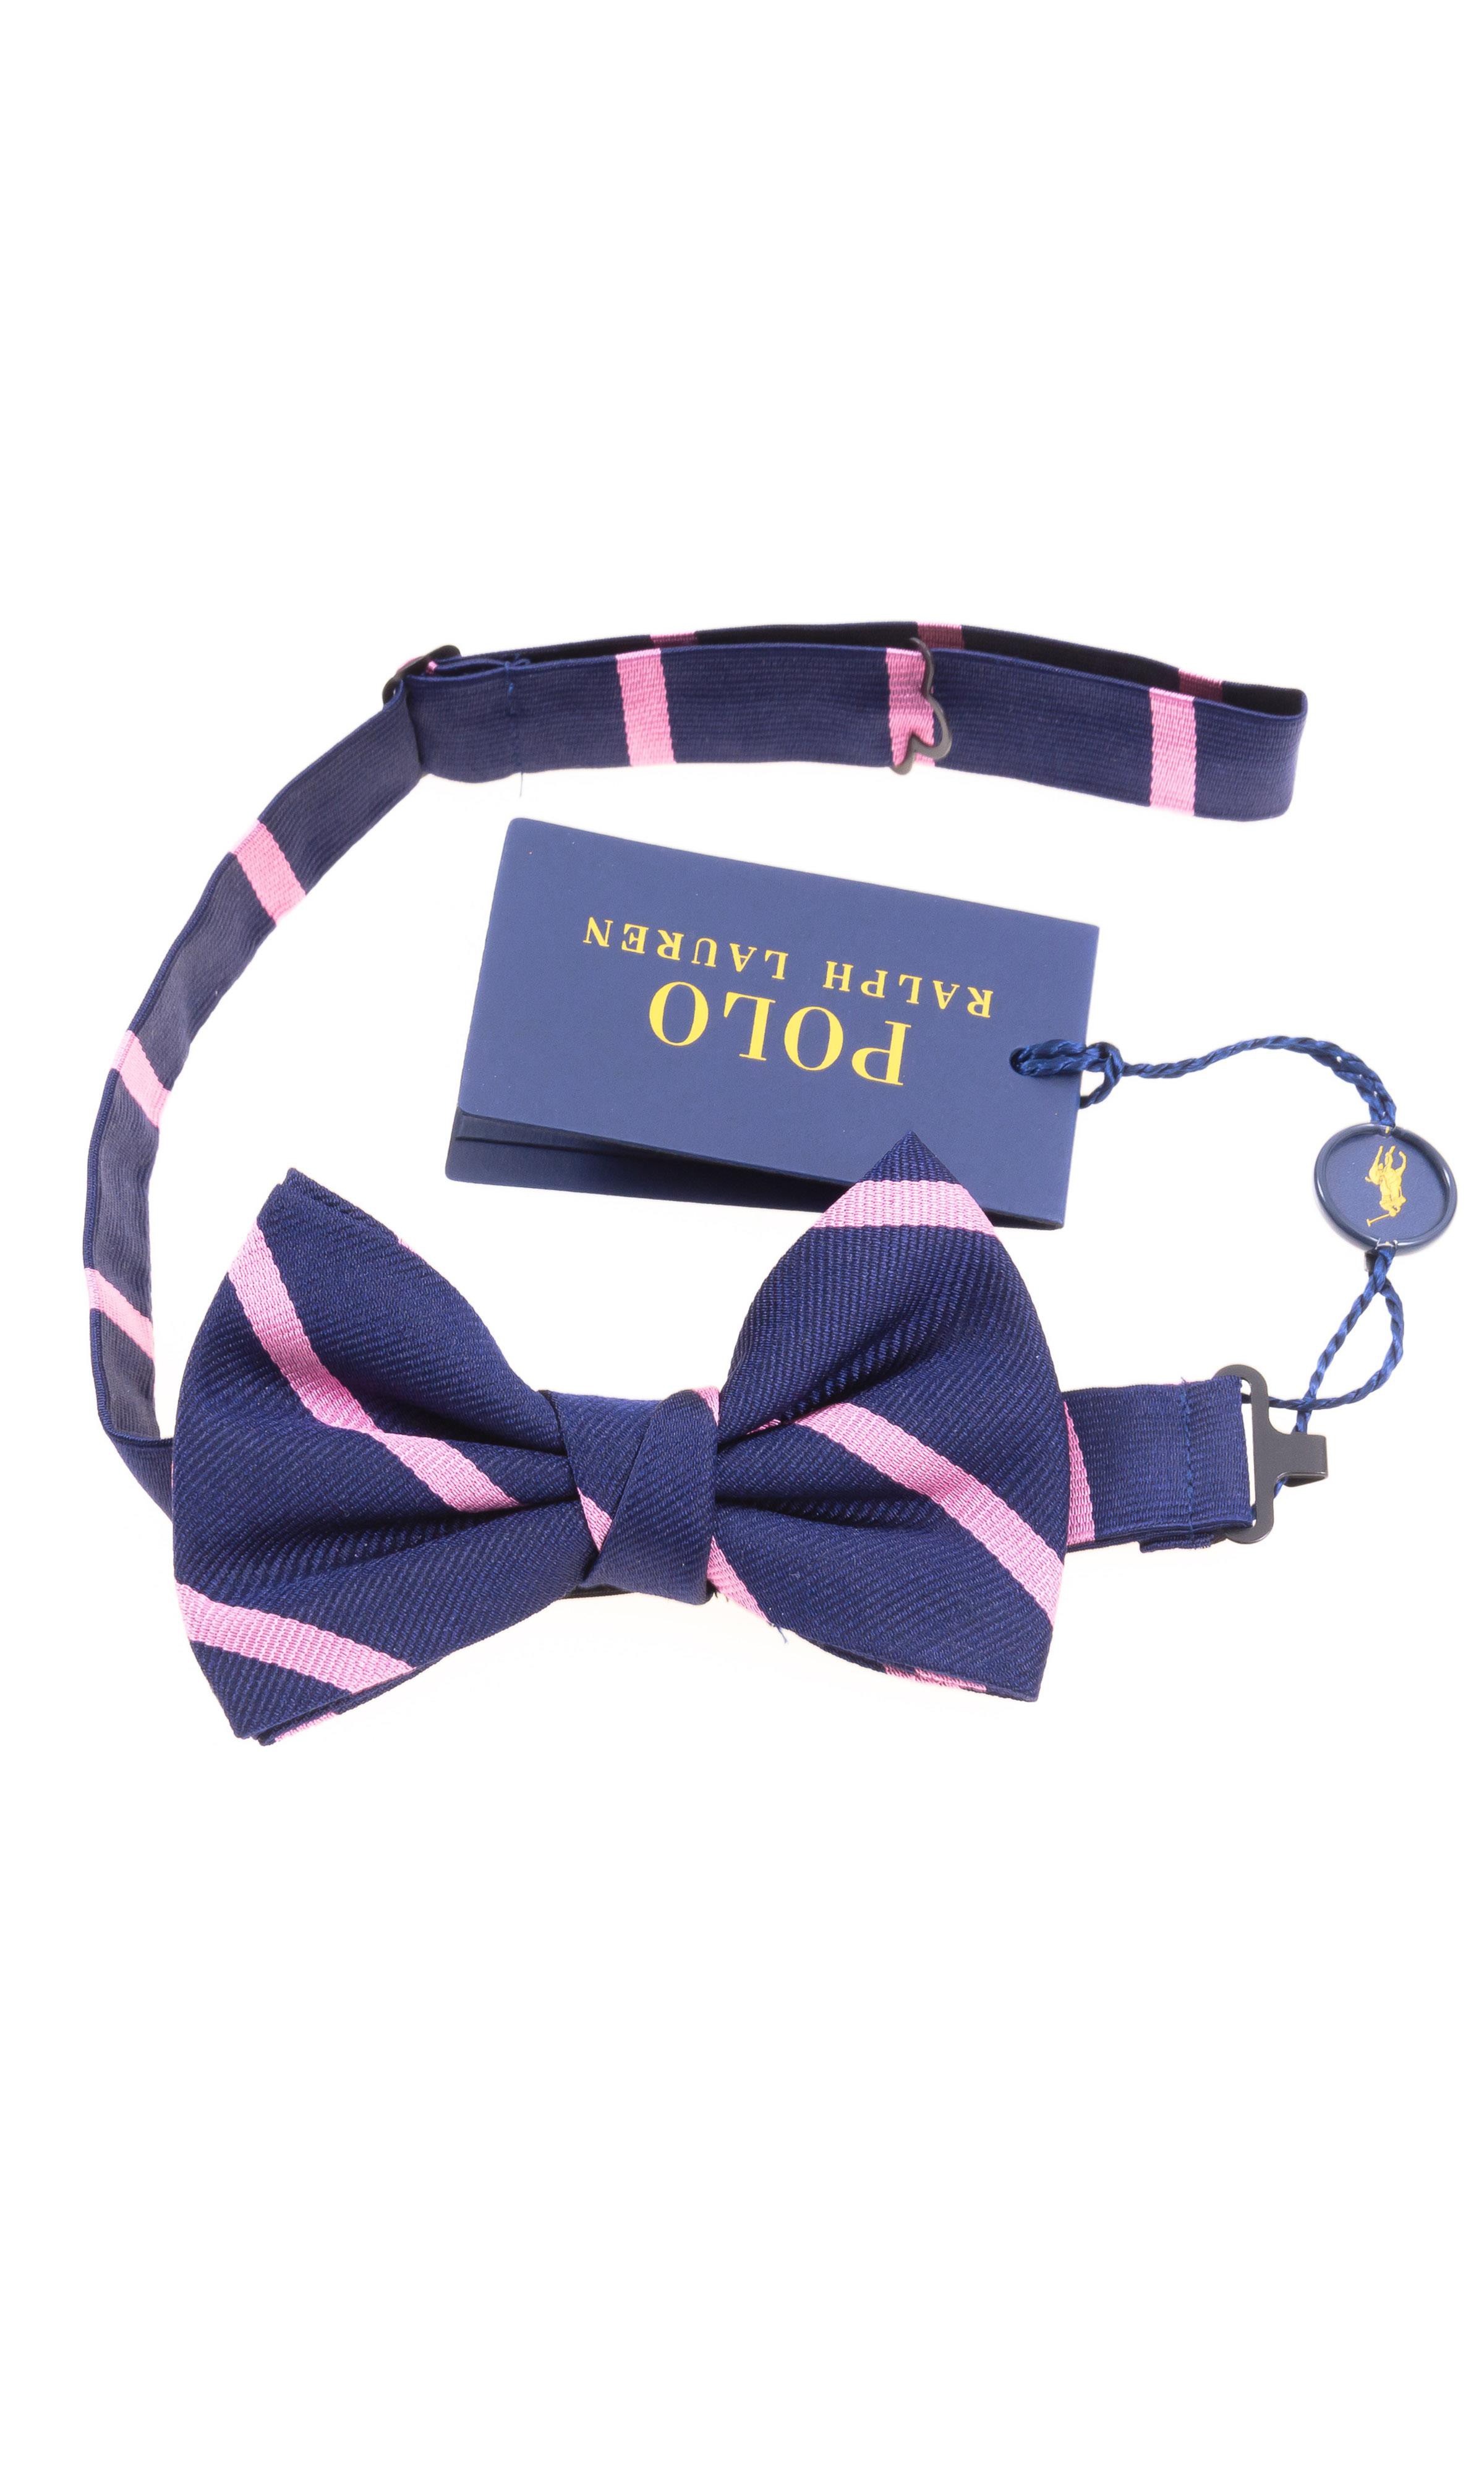 polo ralph lauren bow ties